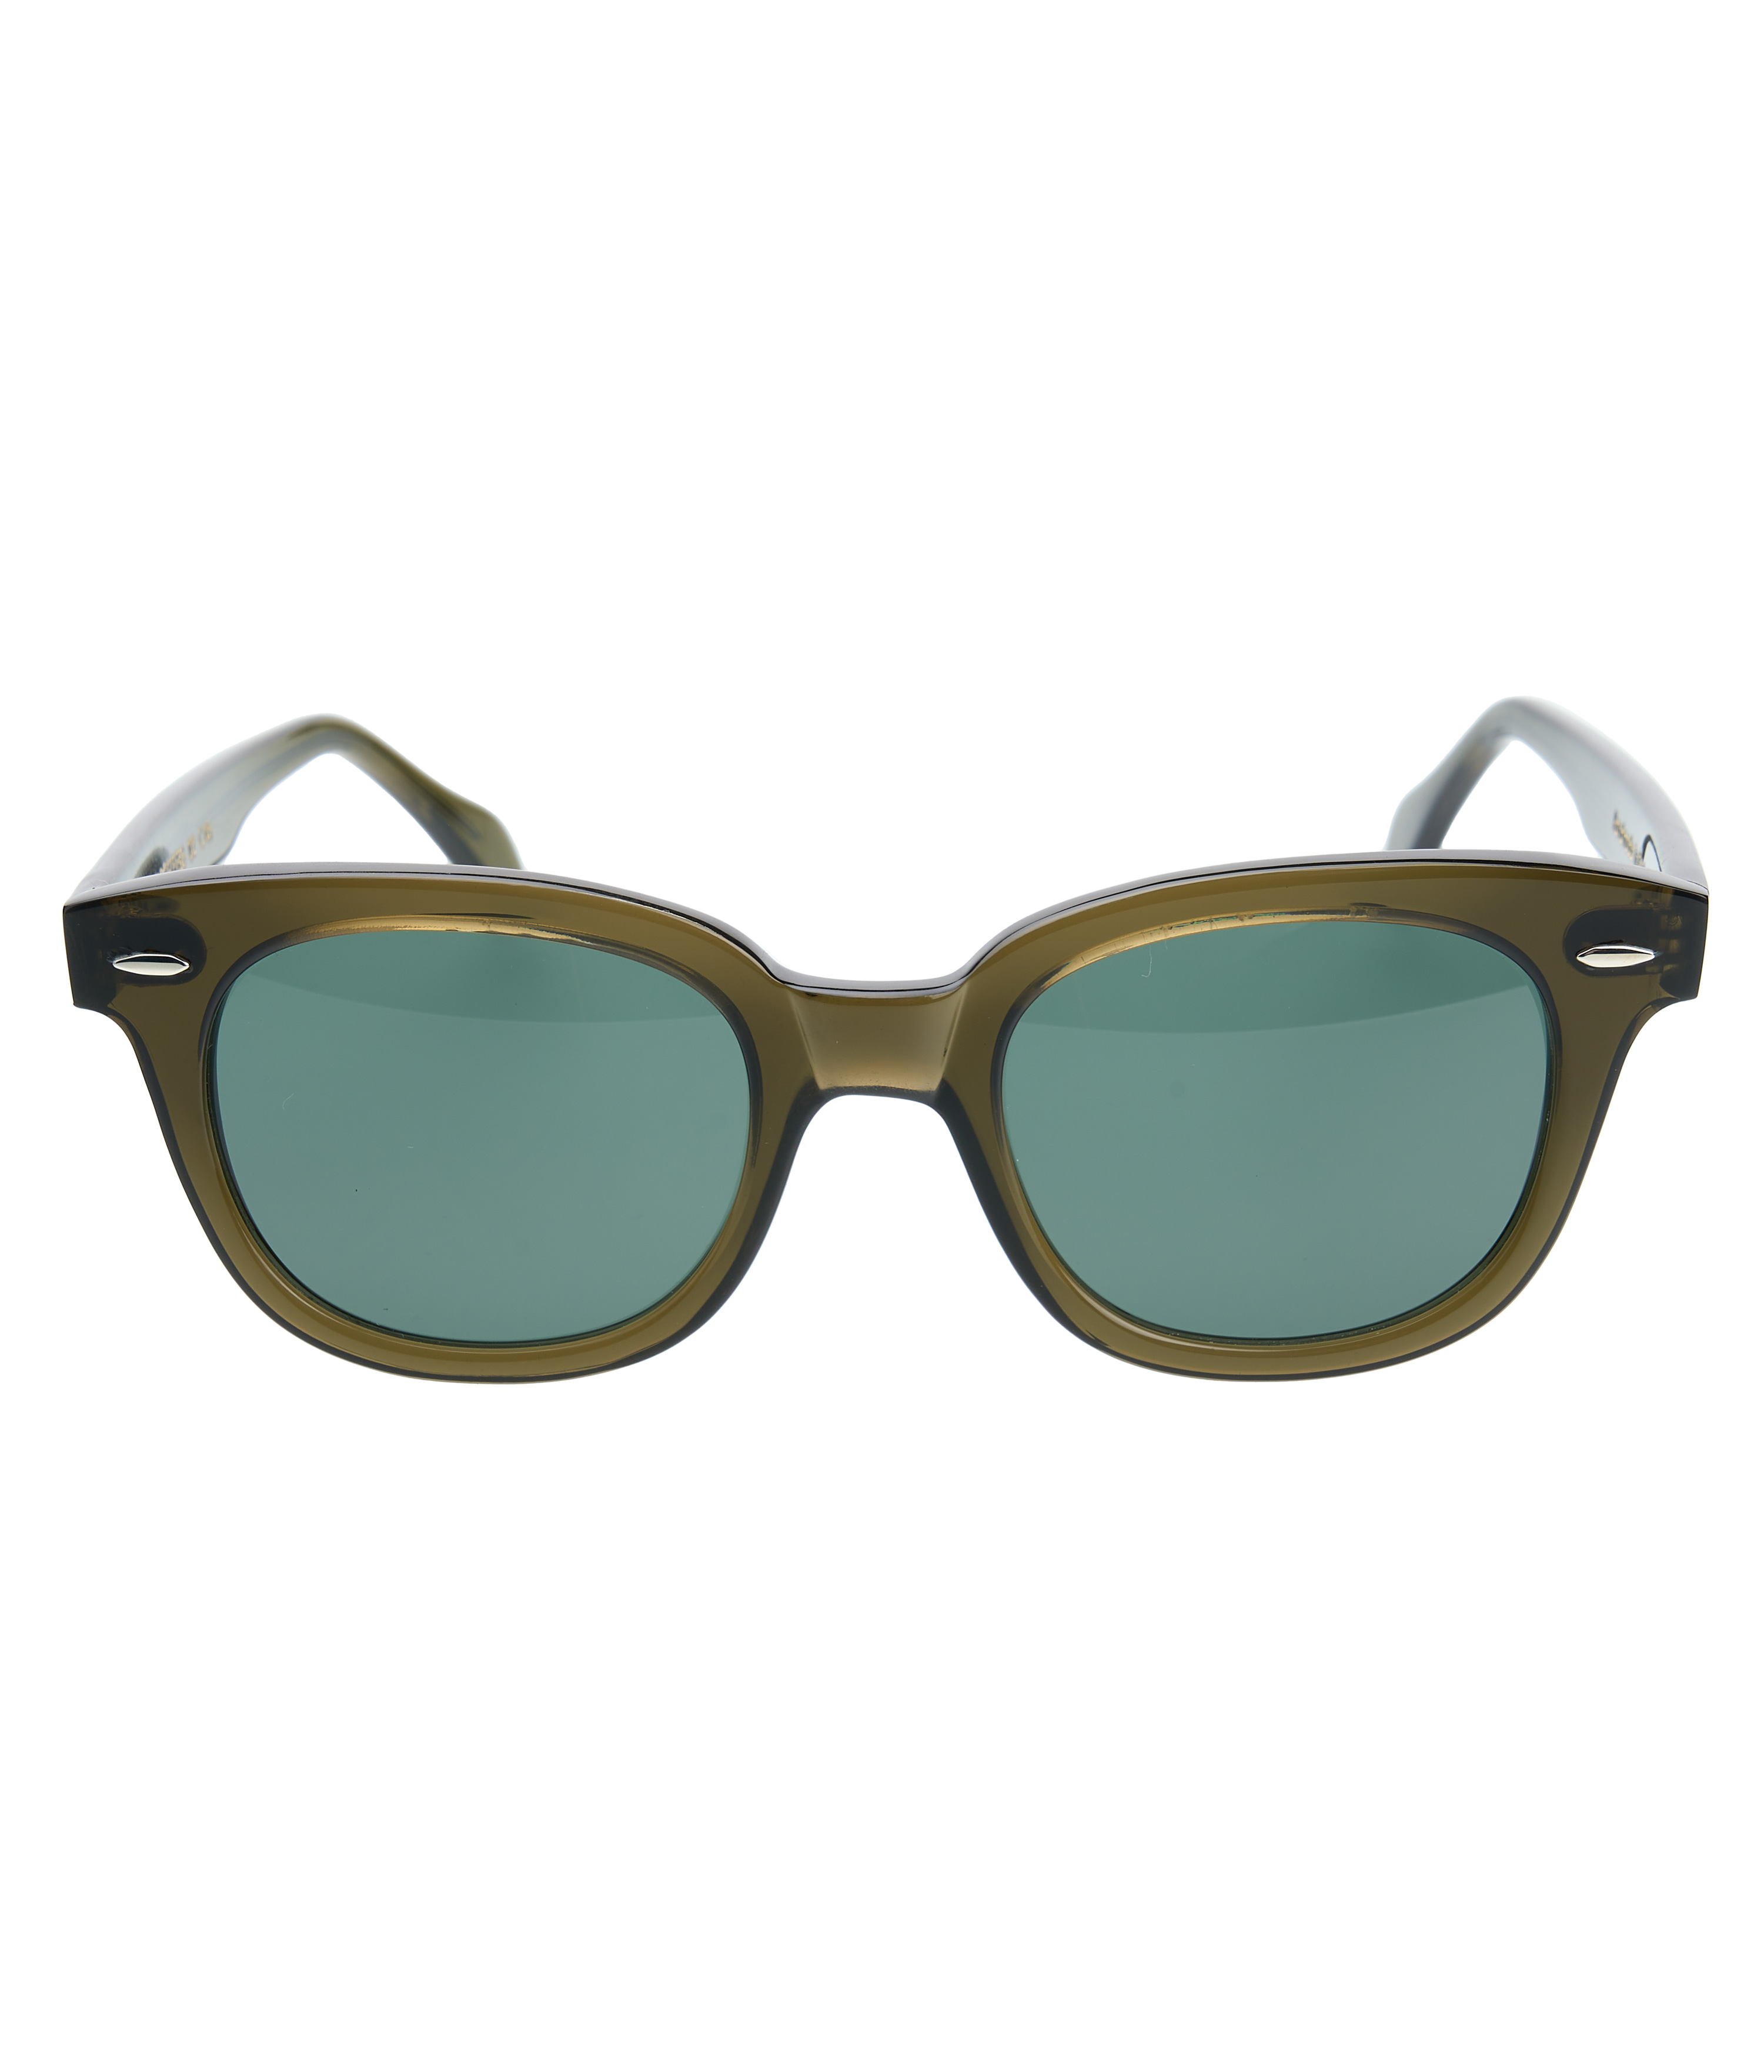 1963 Sun Glasses Elwood algae